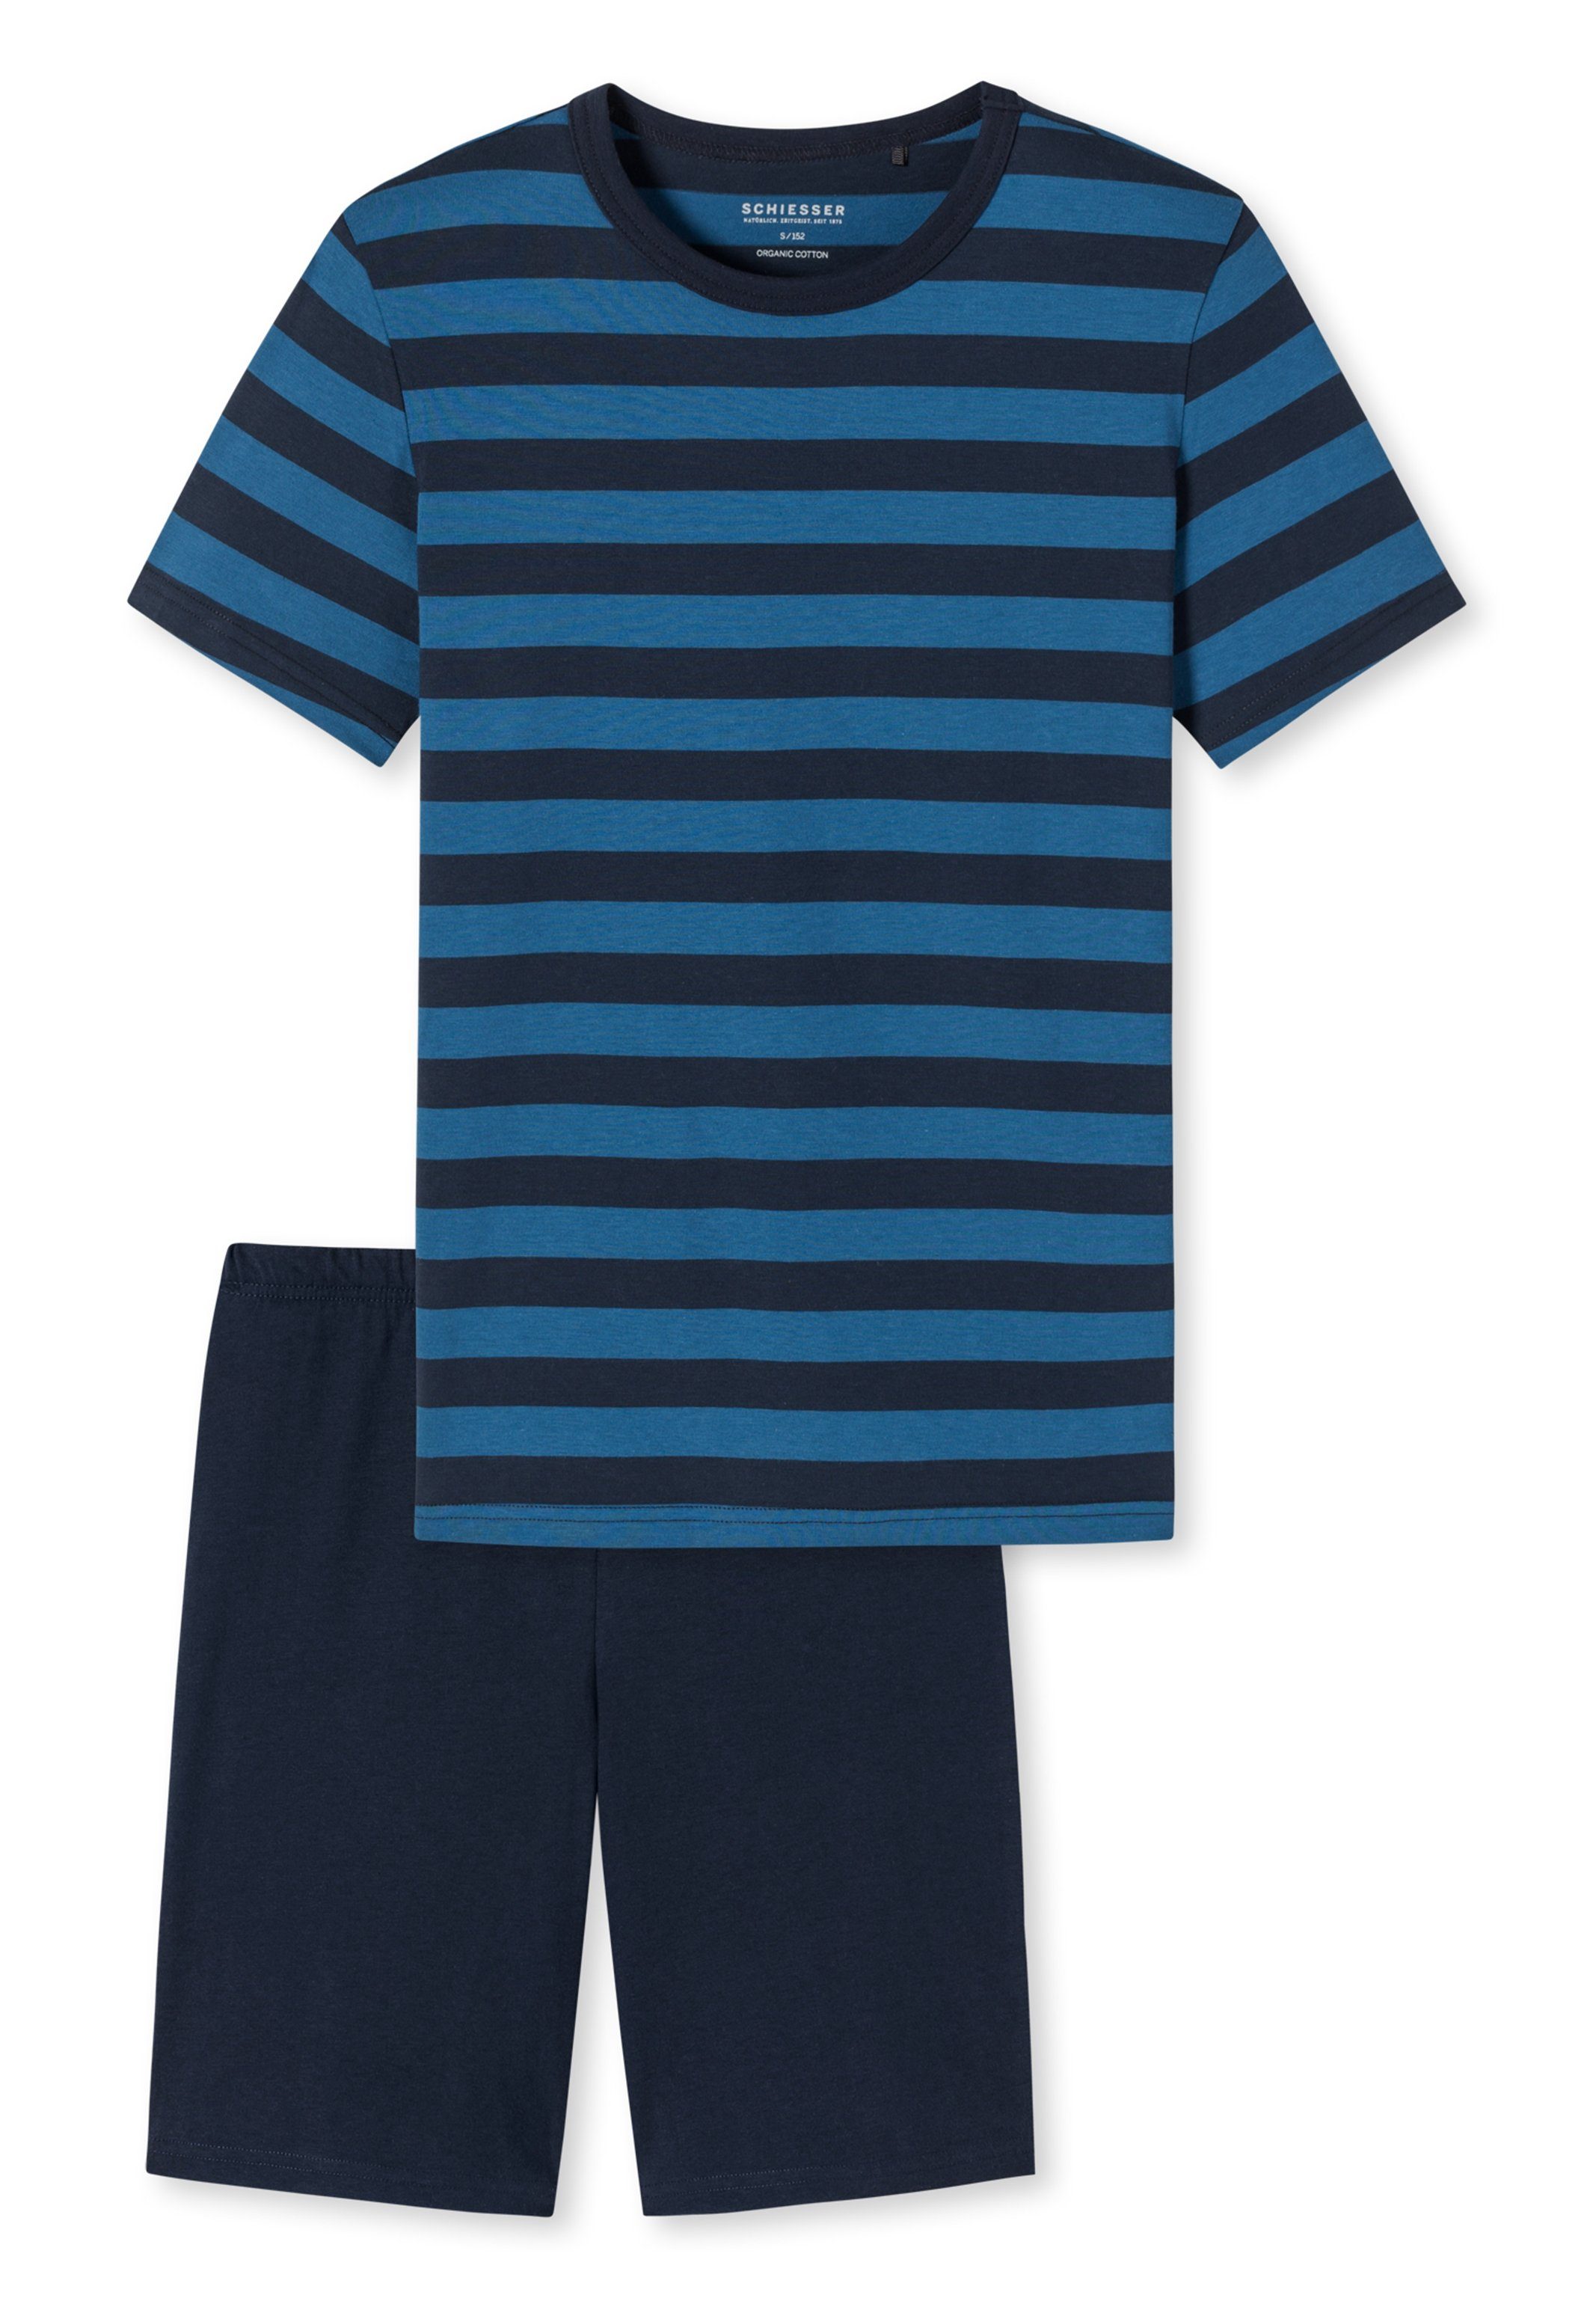 Schiesser Pyjama Teens Boys (Set, 2 tlg) Schlafanzug Kurz - Baumwolle - Kurzarm Shirt mit Streifen-Muster blau